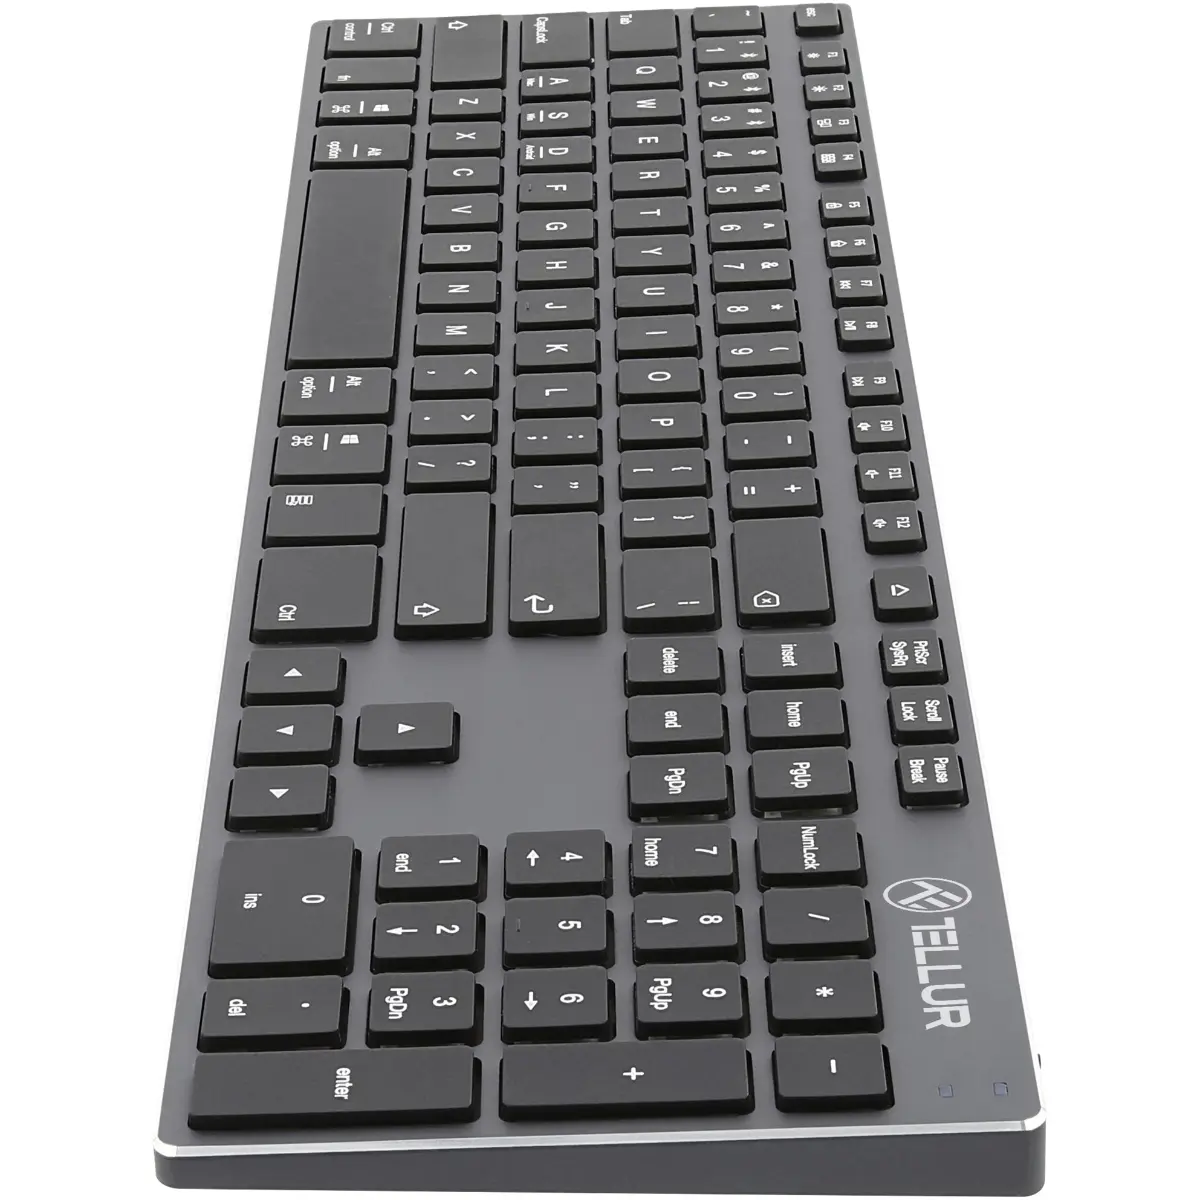 Tastatura wireless Tellur Shade TTL491121, Bluetooth, Gri/Negru